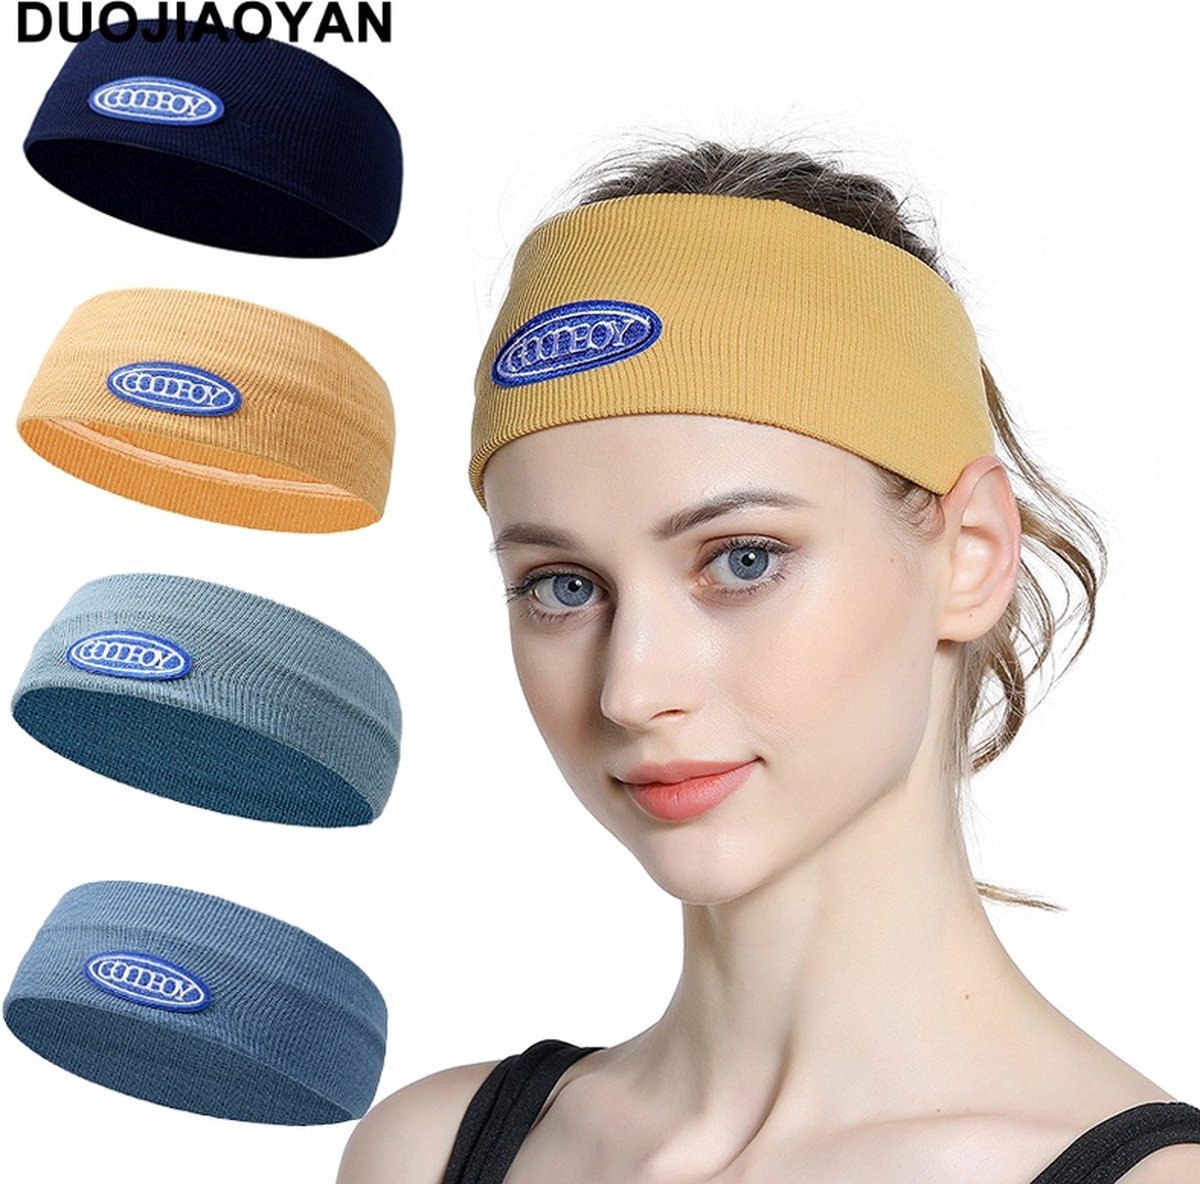 Vrouwen Hoofdband Vintage Afdrukken Elastische Headwrap Mode Sport Running Yoga Oefening Haarband Zachte Zweetband Haar Accessoires